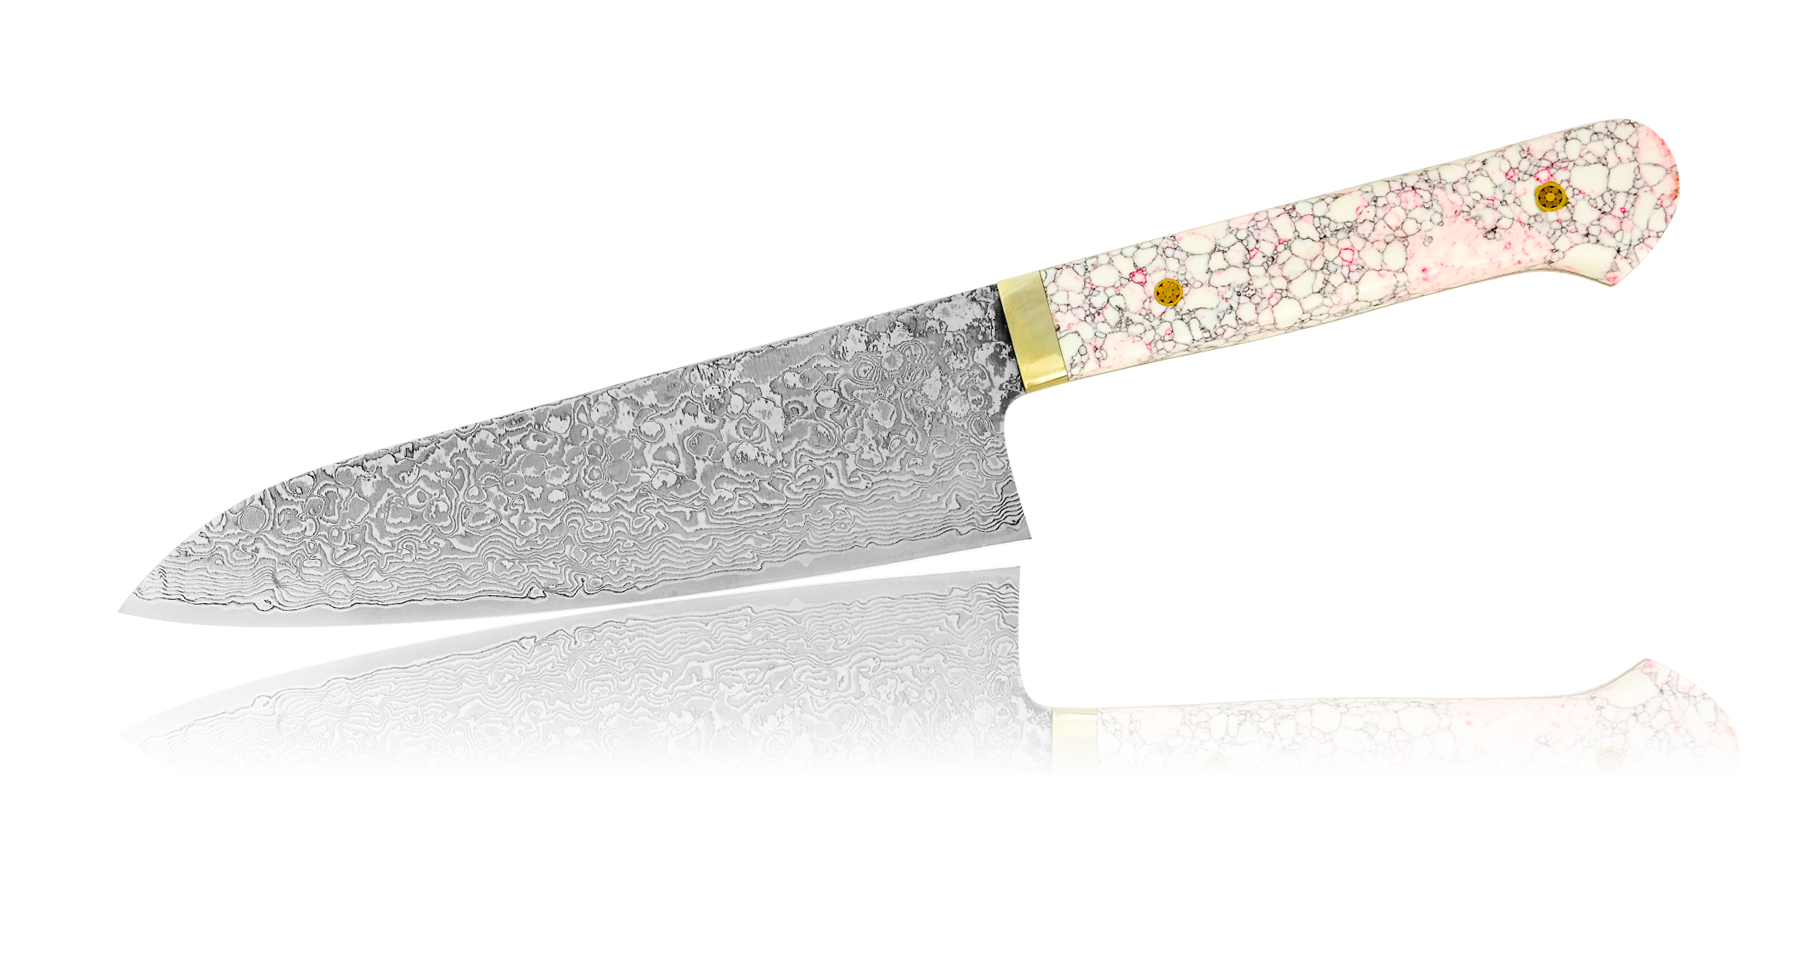 Нож Шеф Hiroo Itou, 180 мм, сталь R-2 в обкладках Damaskus, рукоять кориан бело-розовый